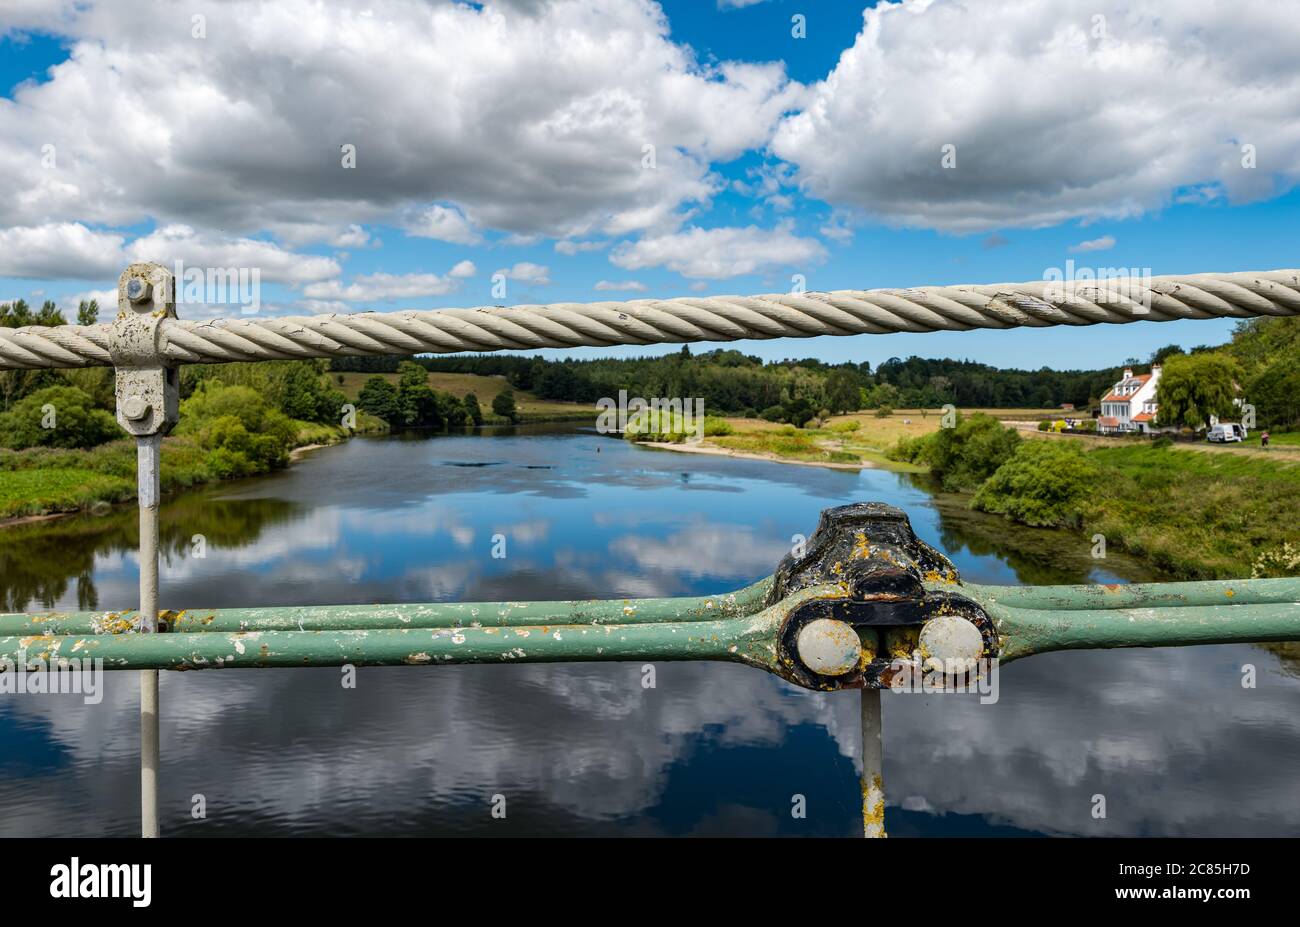 River Tweed, Englisch/Schottische Grenze, Großbritannien, 21. Juli 2020. 200 Jahre Union Bridge: Die Brücke feiert am 26. Juli ihr 200-jähriges Bestehen. Es war die erste Fahrzeugaufhängung Brücke in Großbritannien. Zur Zeit ihrer Errichtung war sie mit 137 m die längste schmiedeeiserne Hängebrücke der Welt. Es wird immer noch regelmäßig von Fußgängern, Radfahrern und Autos verwendet, aber Autos müssen es zu einer Zeit überqueren. Kabel der Brücke mit Blick auf den Fluss Tweed an der Gewerkschaftsgrenze Stockfoto